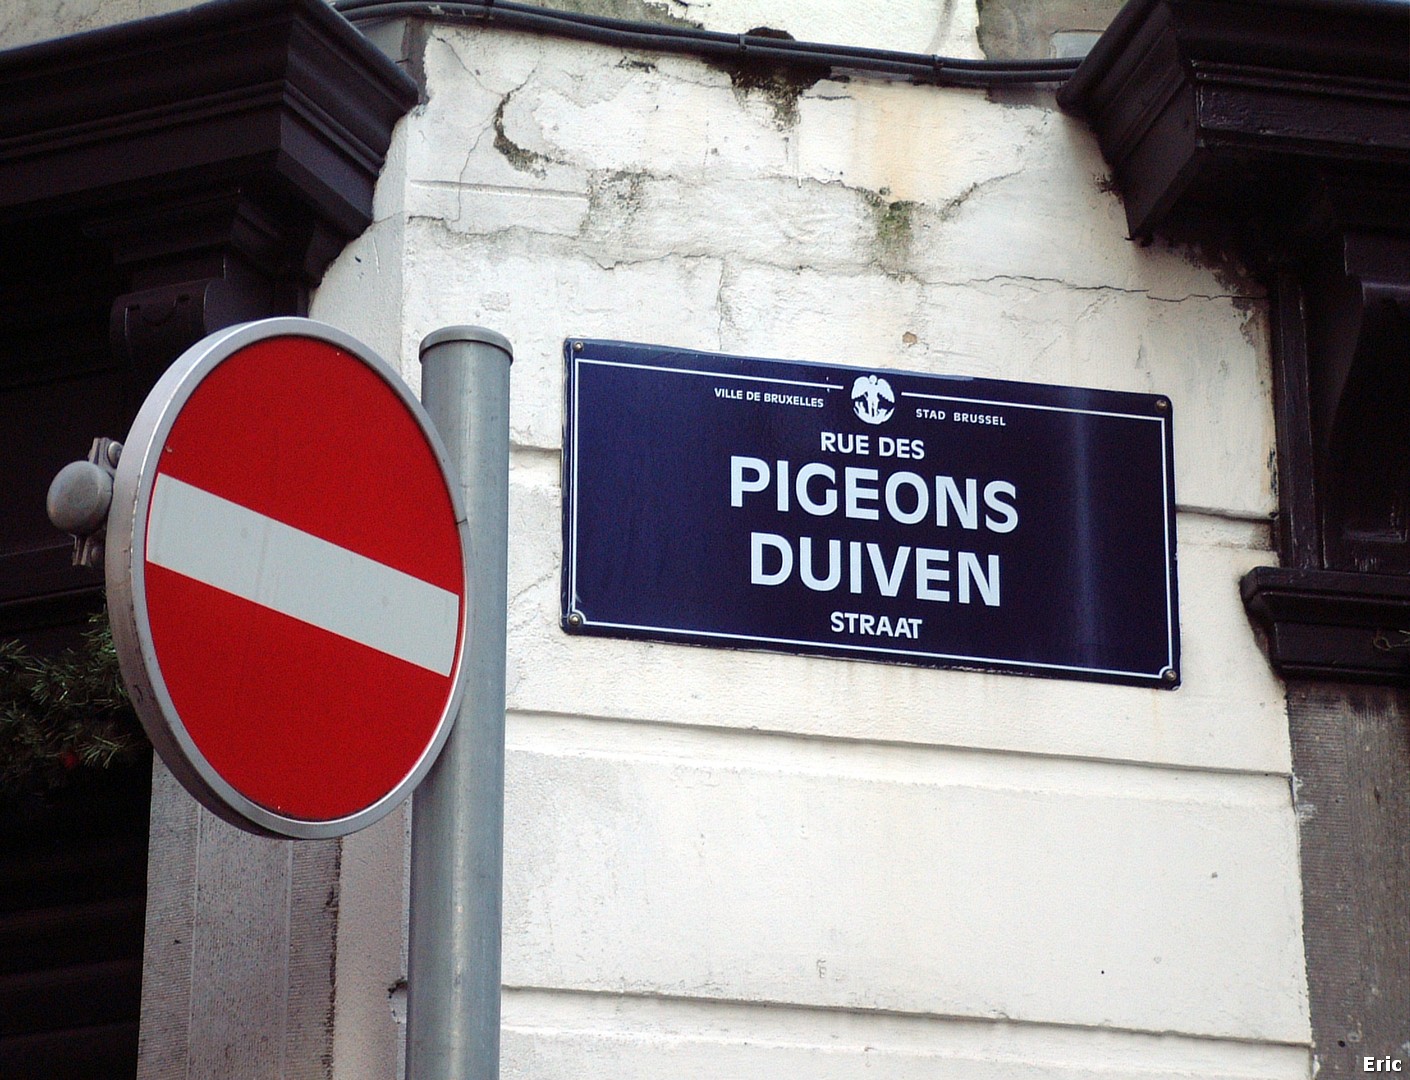  Pigeons